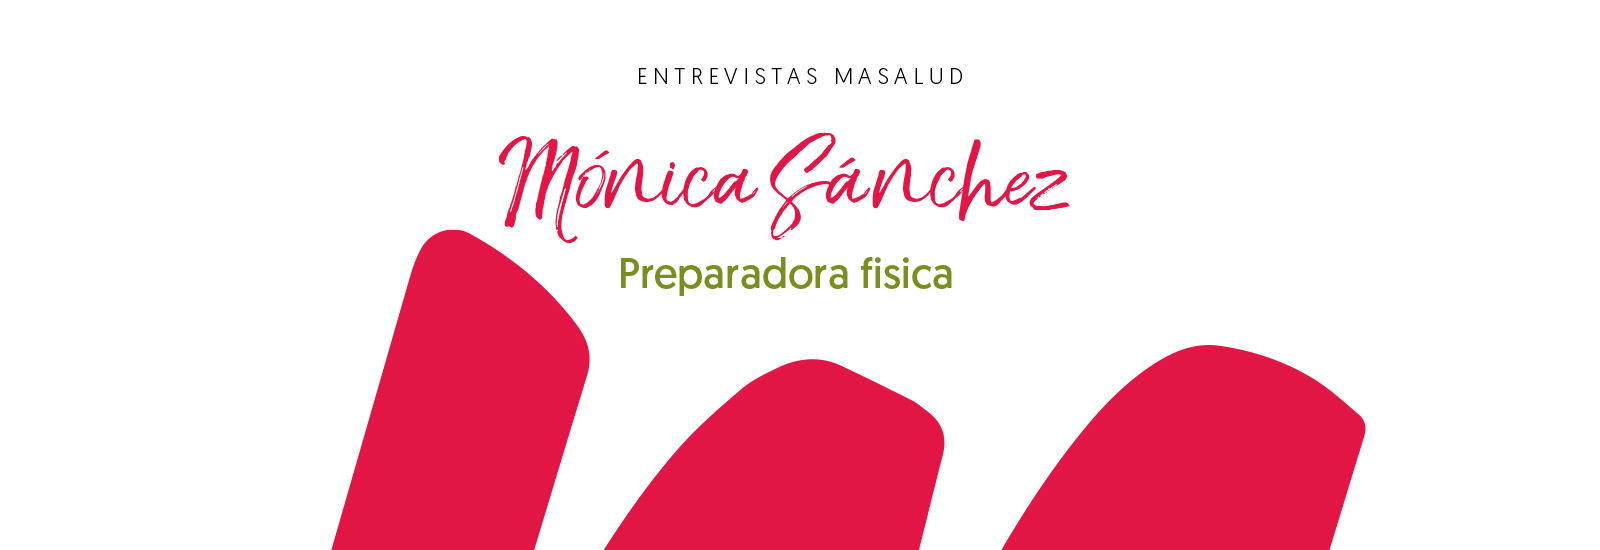 Entrevista, Mónica Sánchez, preparadora fisica